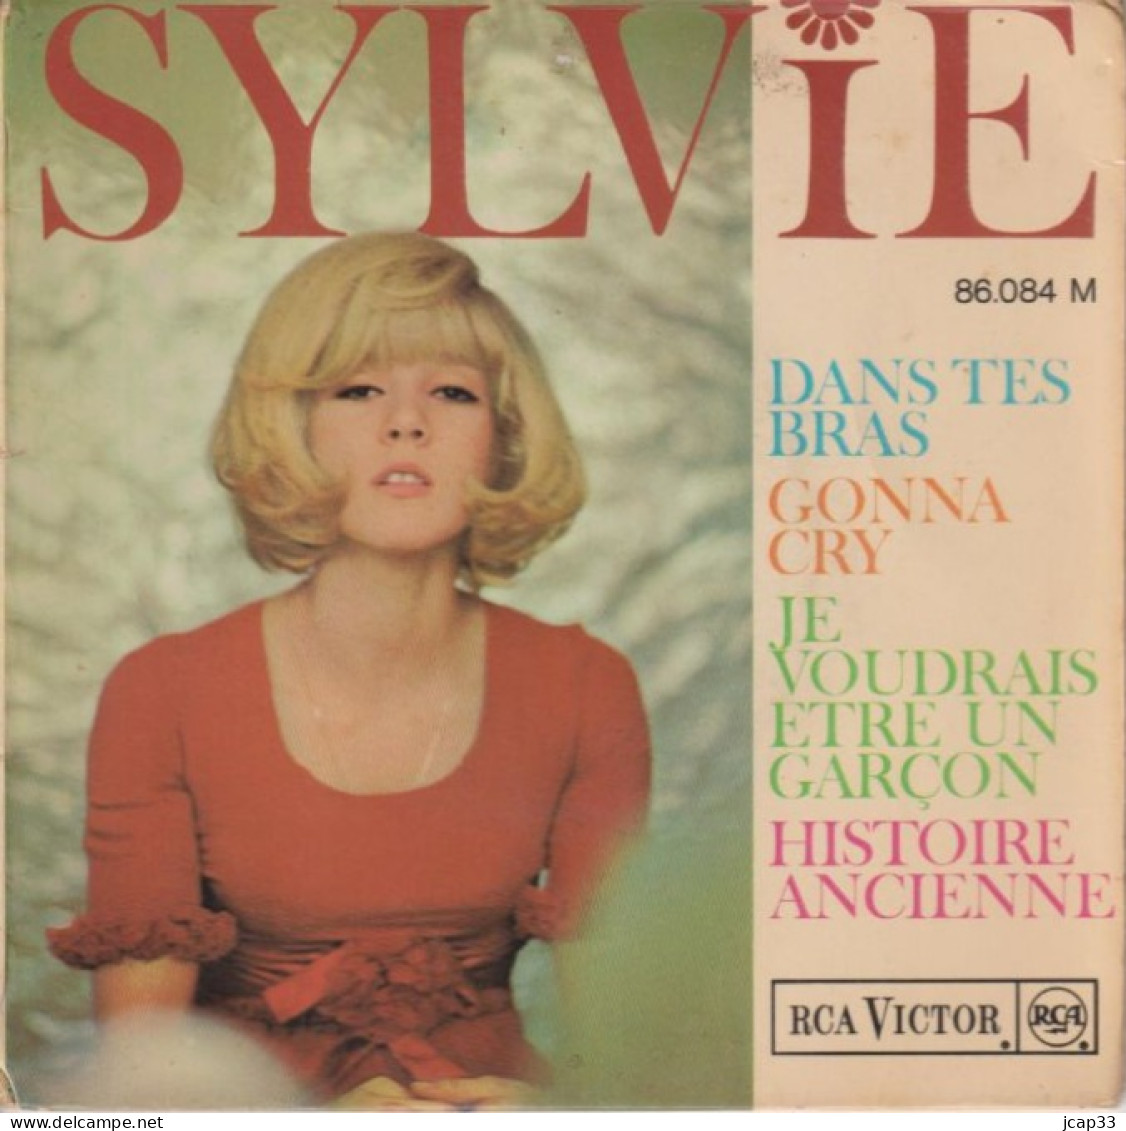 SYLVIE VARTAN  -   DANS TES BRAS ET 3 AUTRES TITRES  -  1965  - - Autres - Musique Française